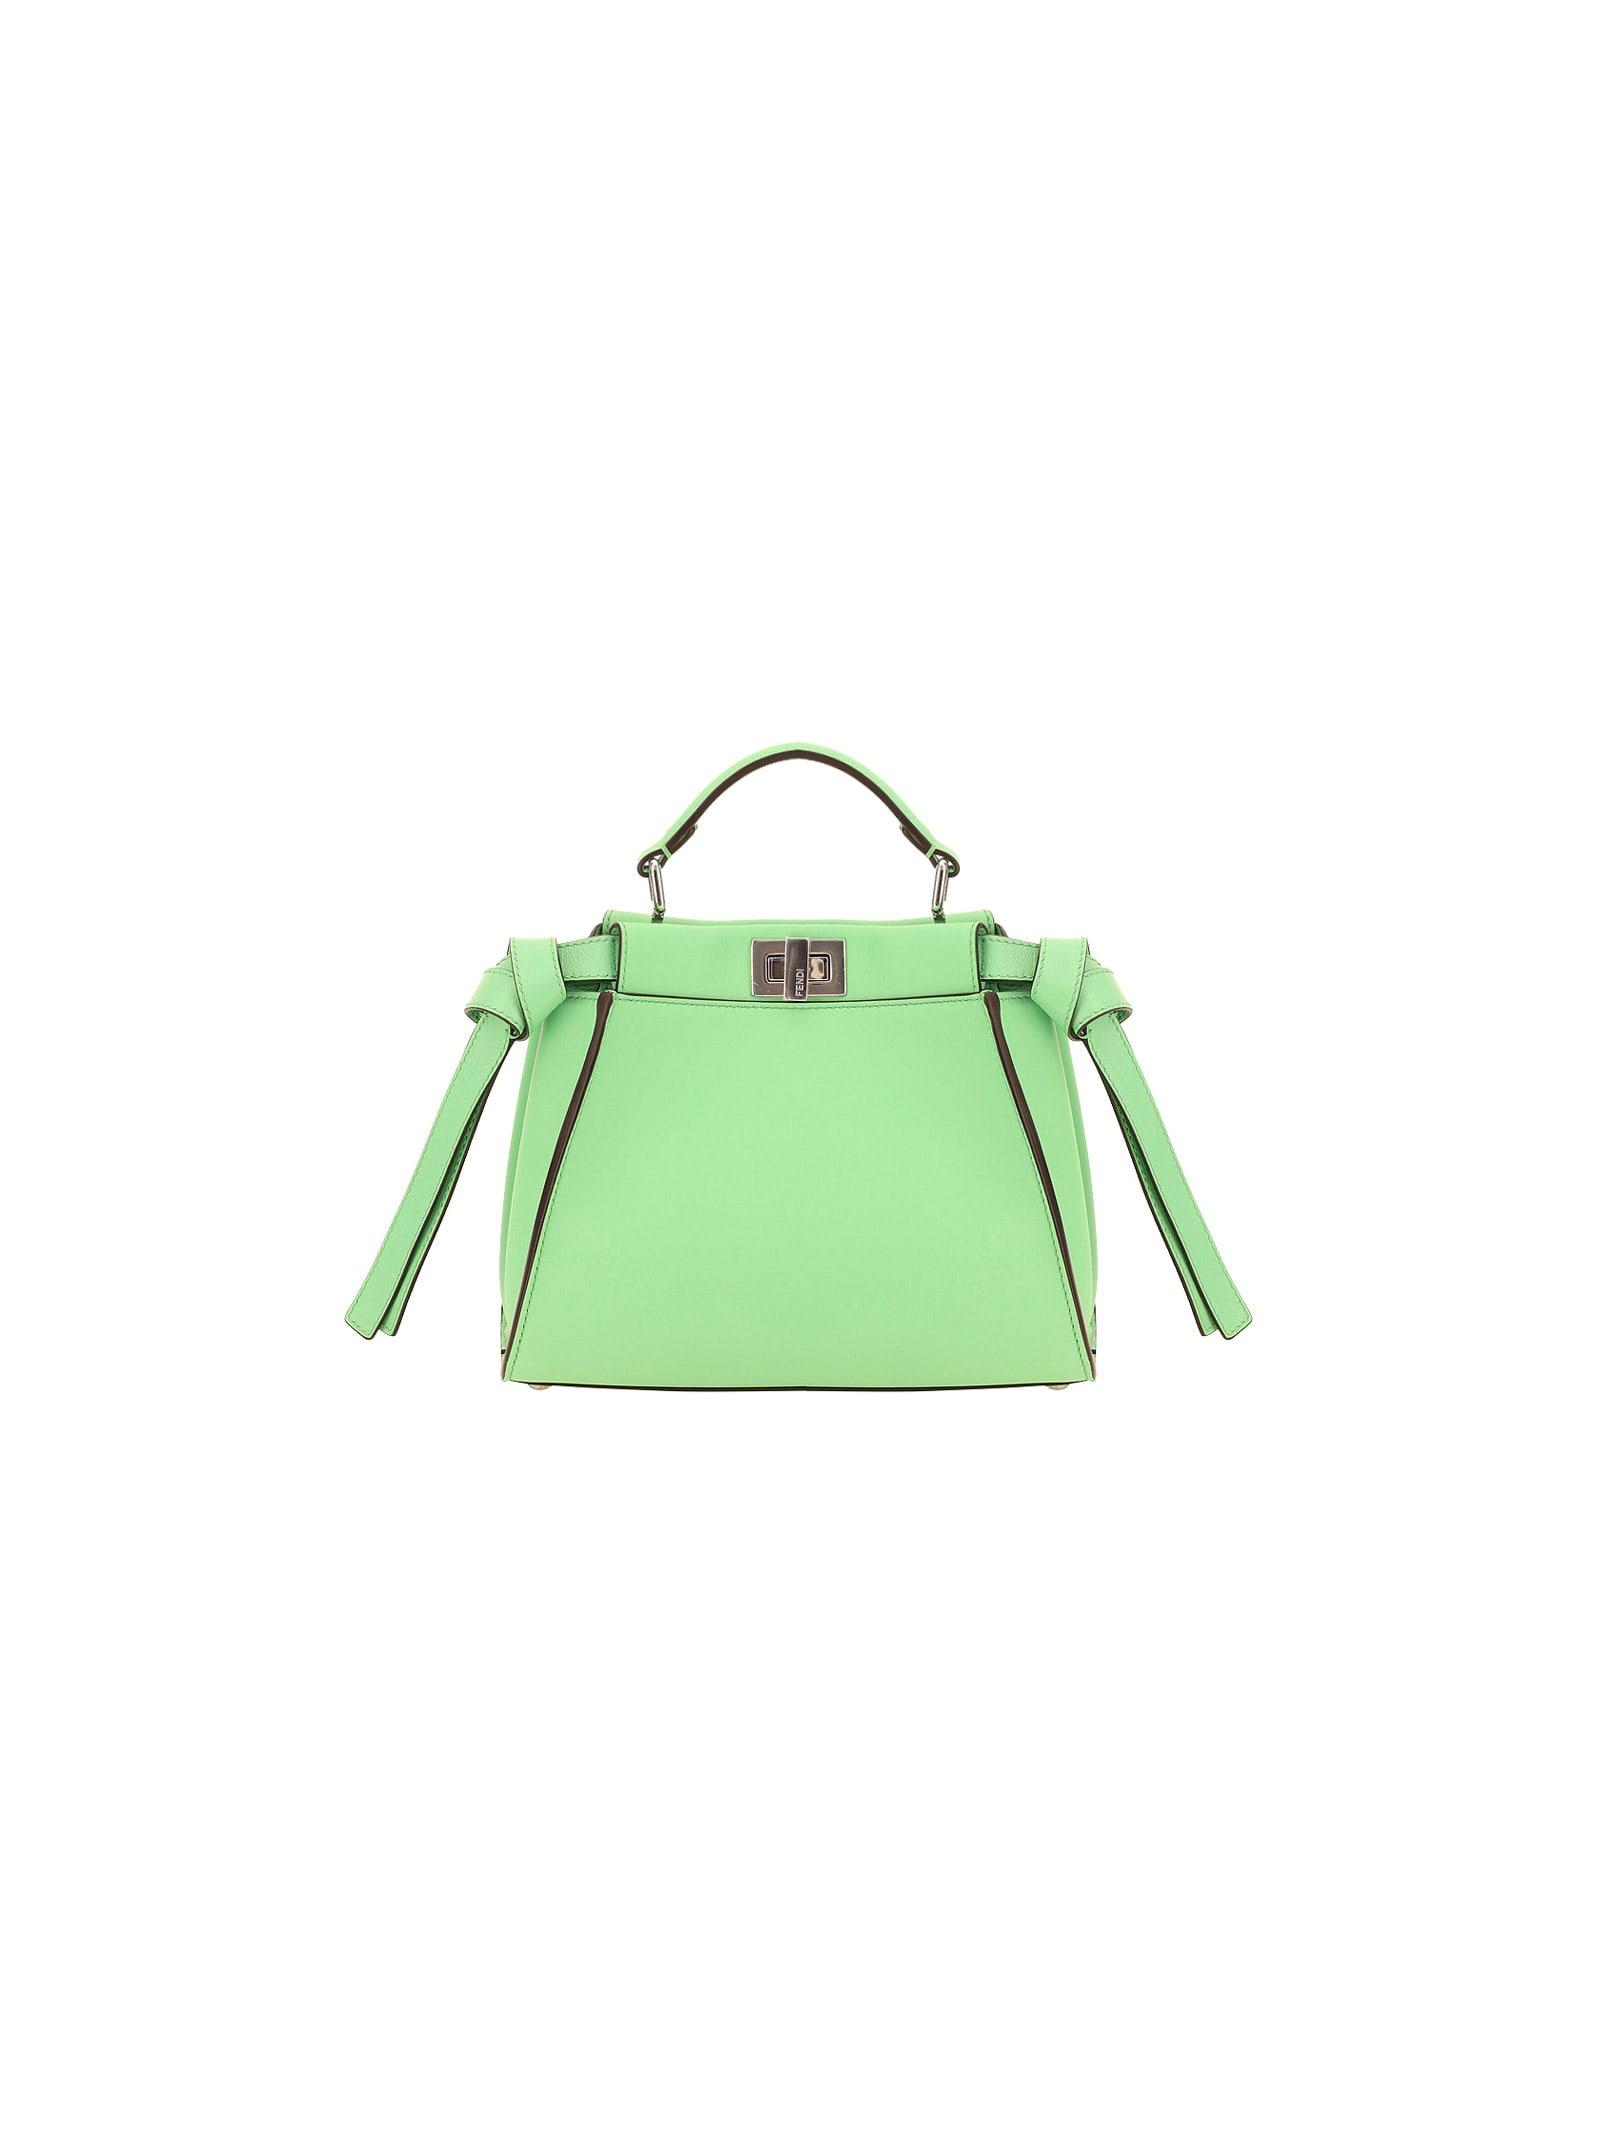 Fendi Peekaboo Mini Hand Bag in Green | Lyst